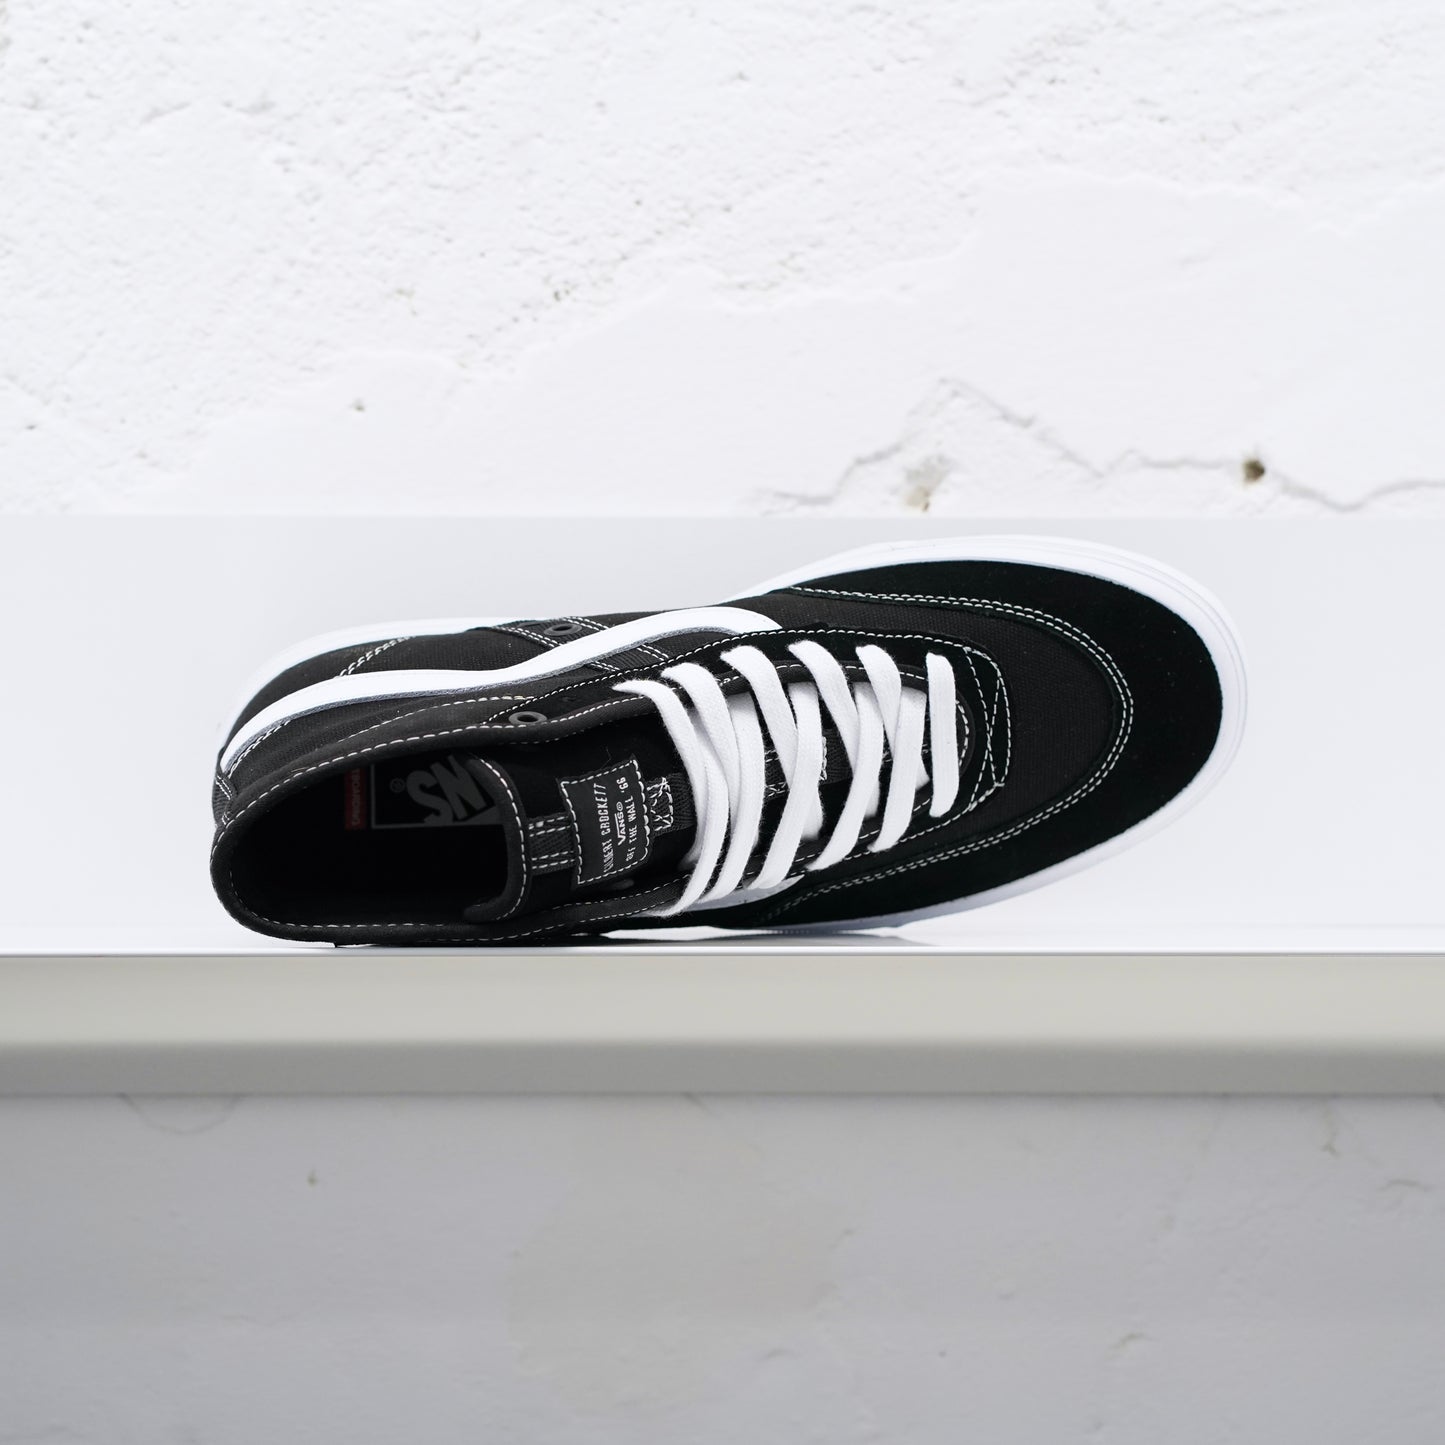 Vans - Crockett High Skate Shoes - Black/White